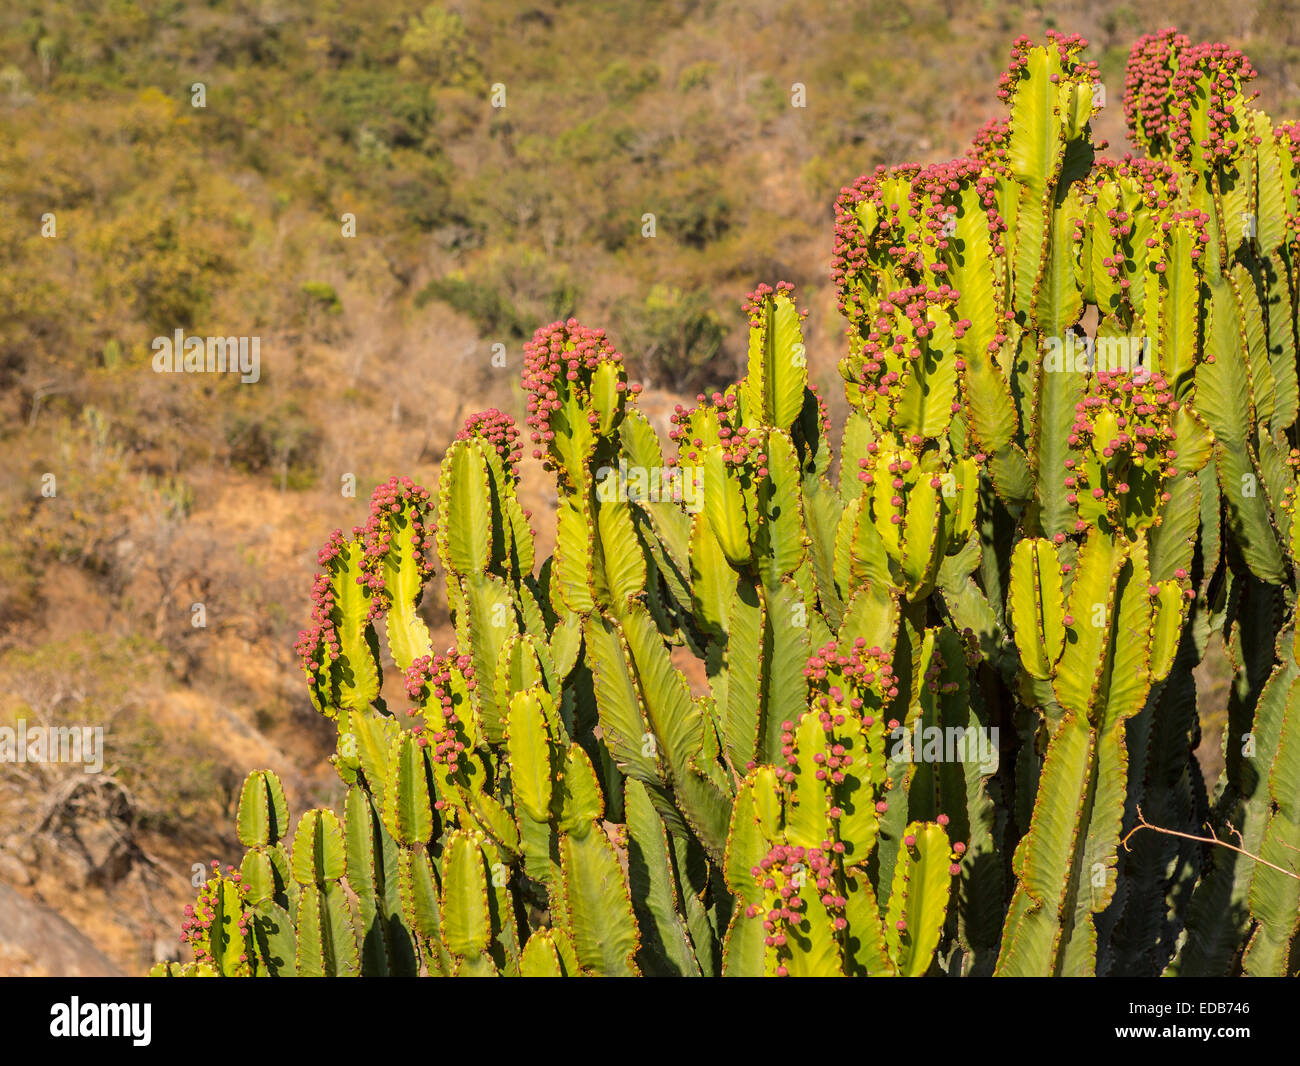 Swasiland, Afrika - Kaktus Pflanze, Phophonyane Nature Reserve. Stockfoto